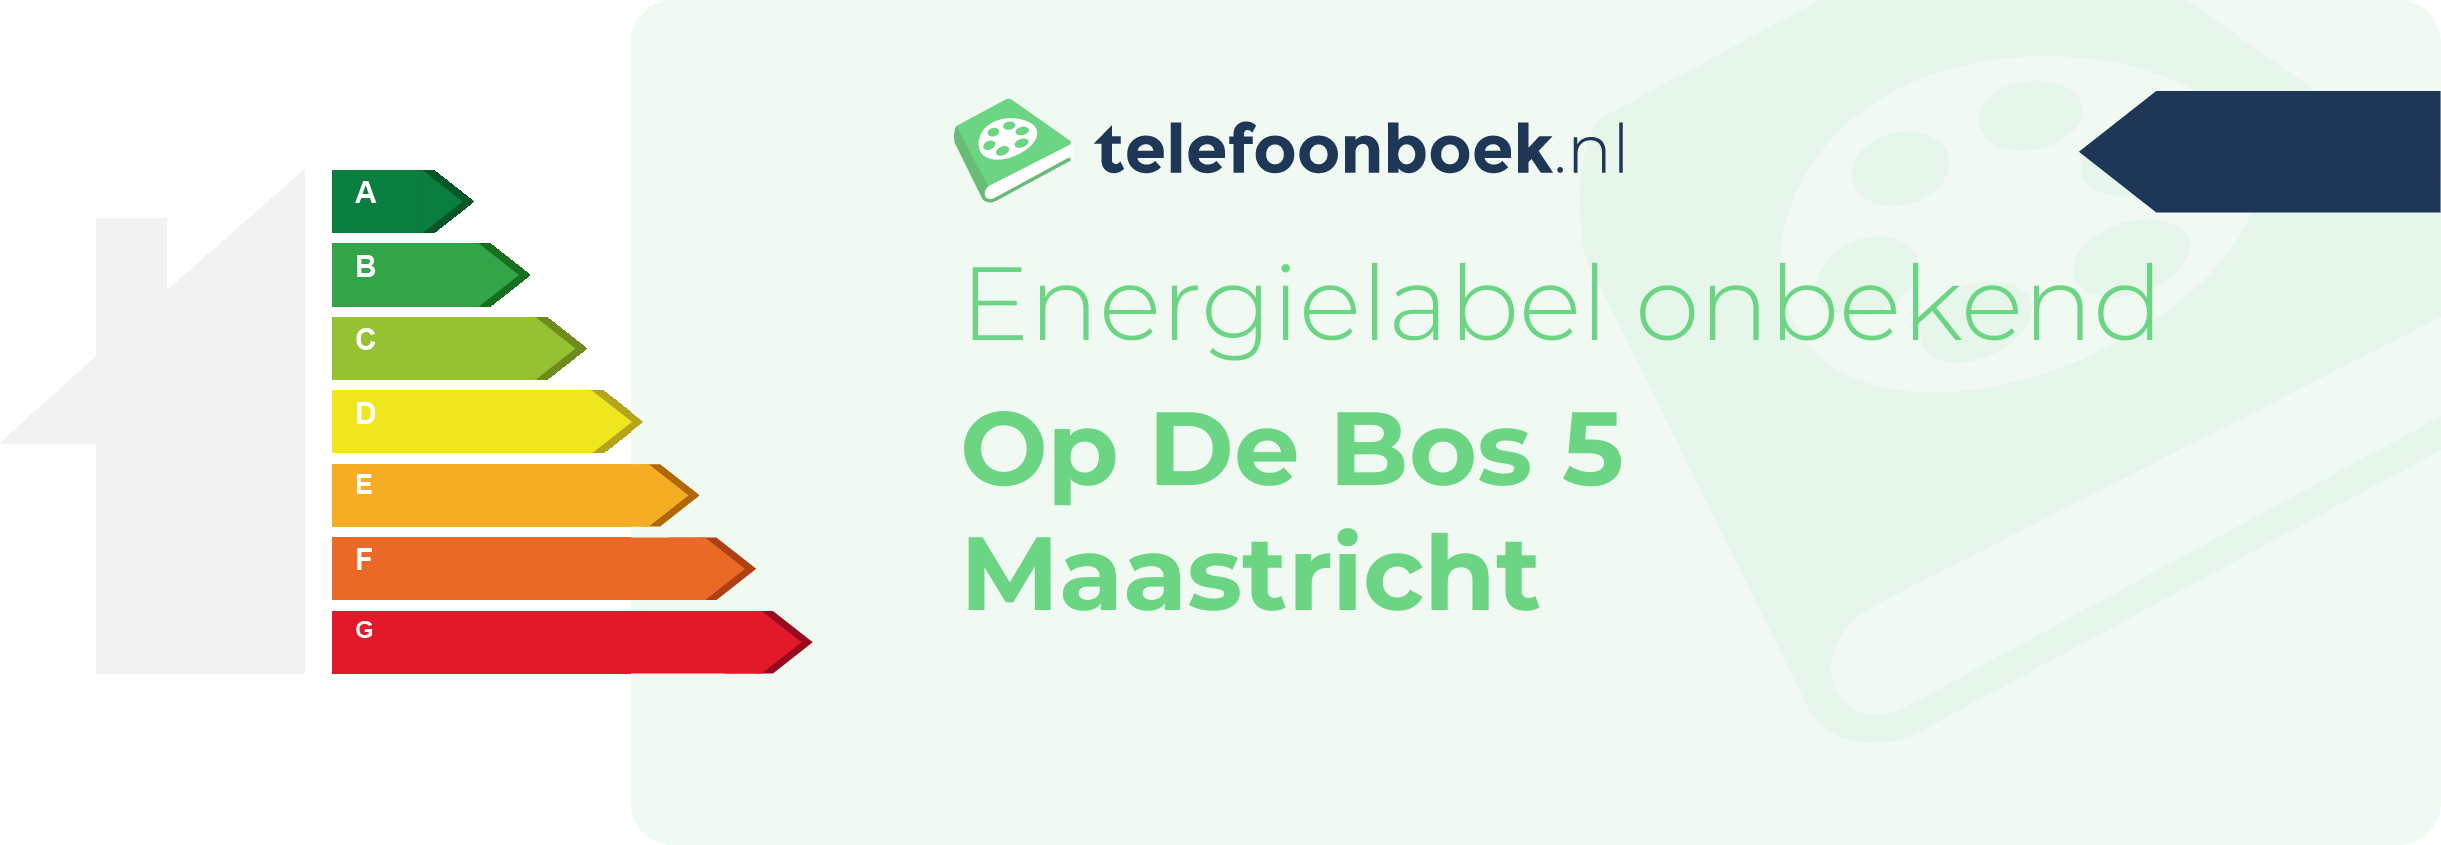 Energielabel Op De Bos 5 Maastricht